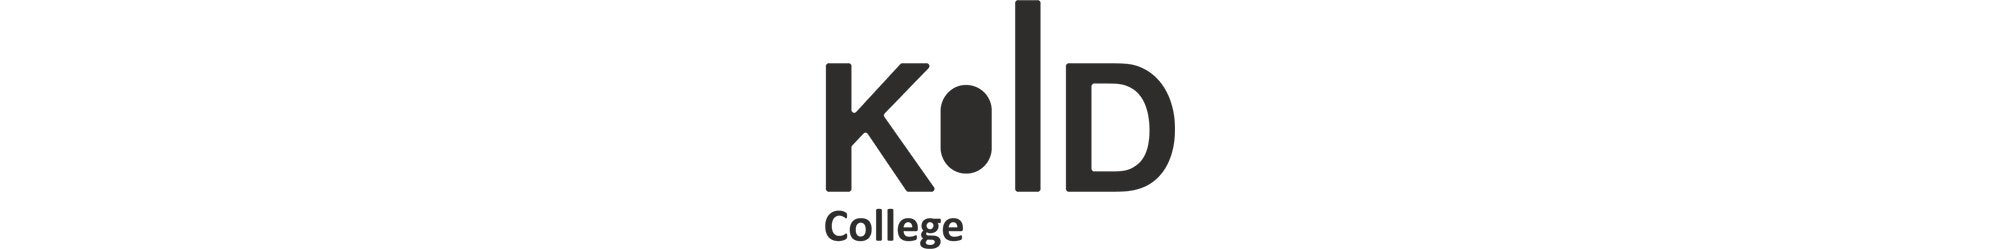 Kold College logo